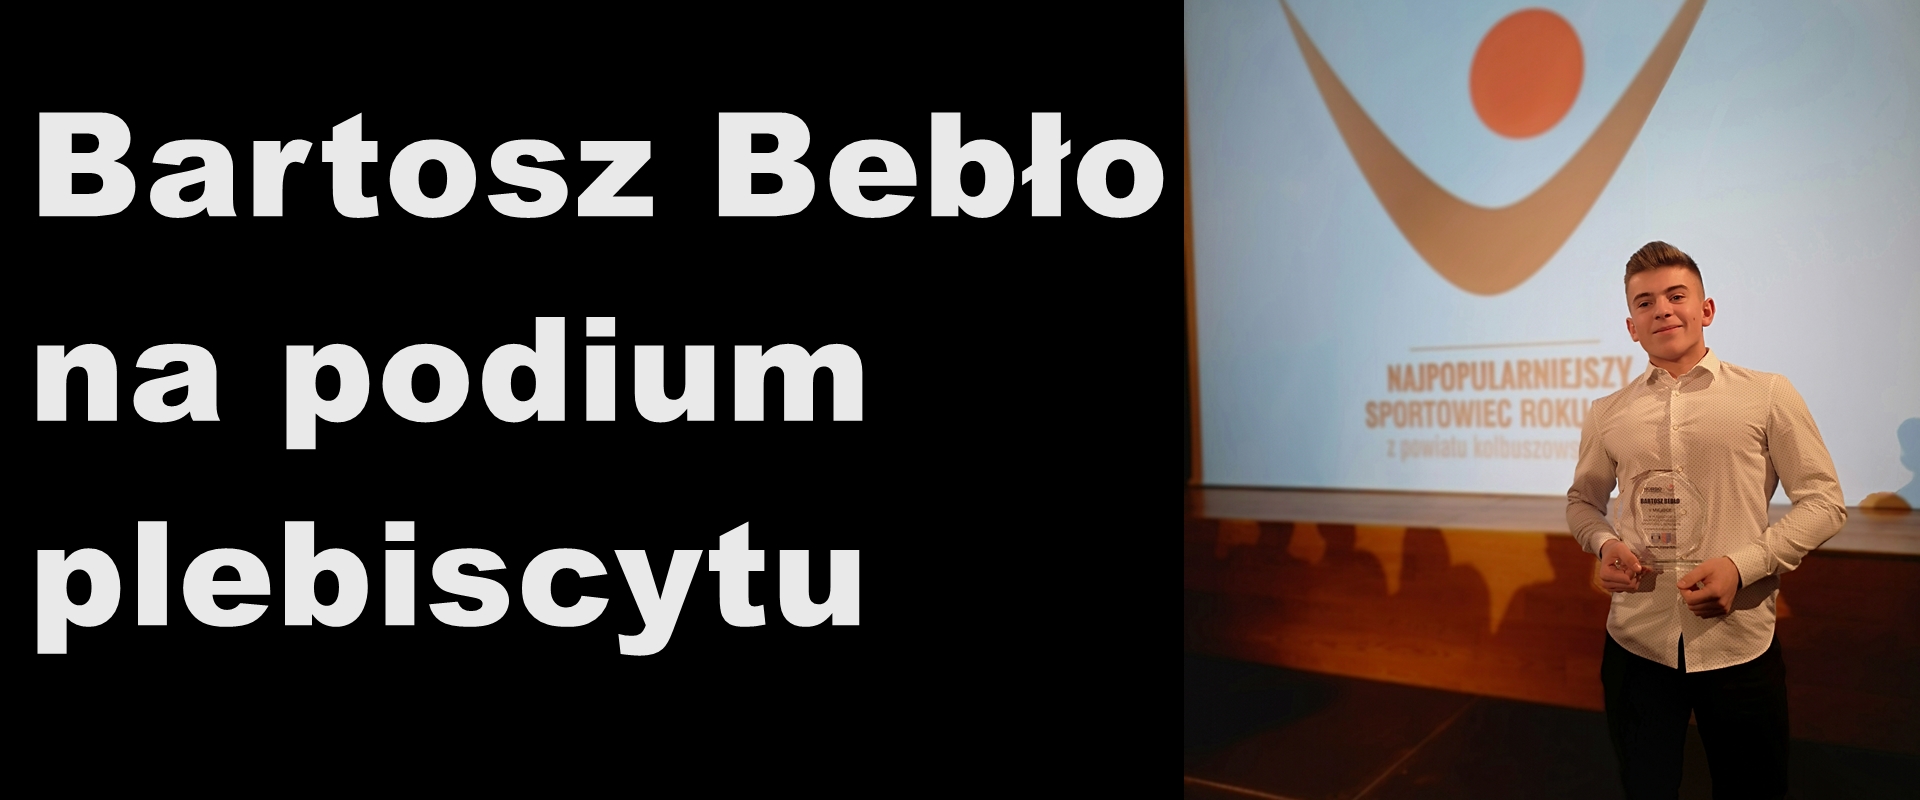 Bartosz Bebło zajmuje 2 miejsce w plebiscycie sportowym